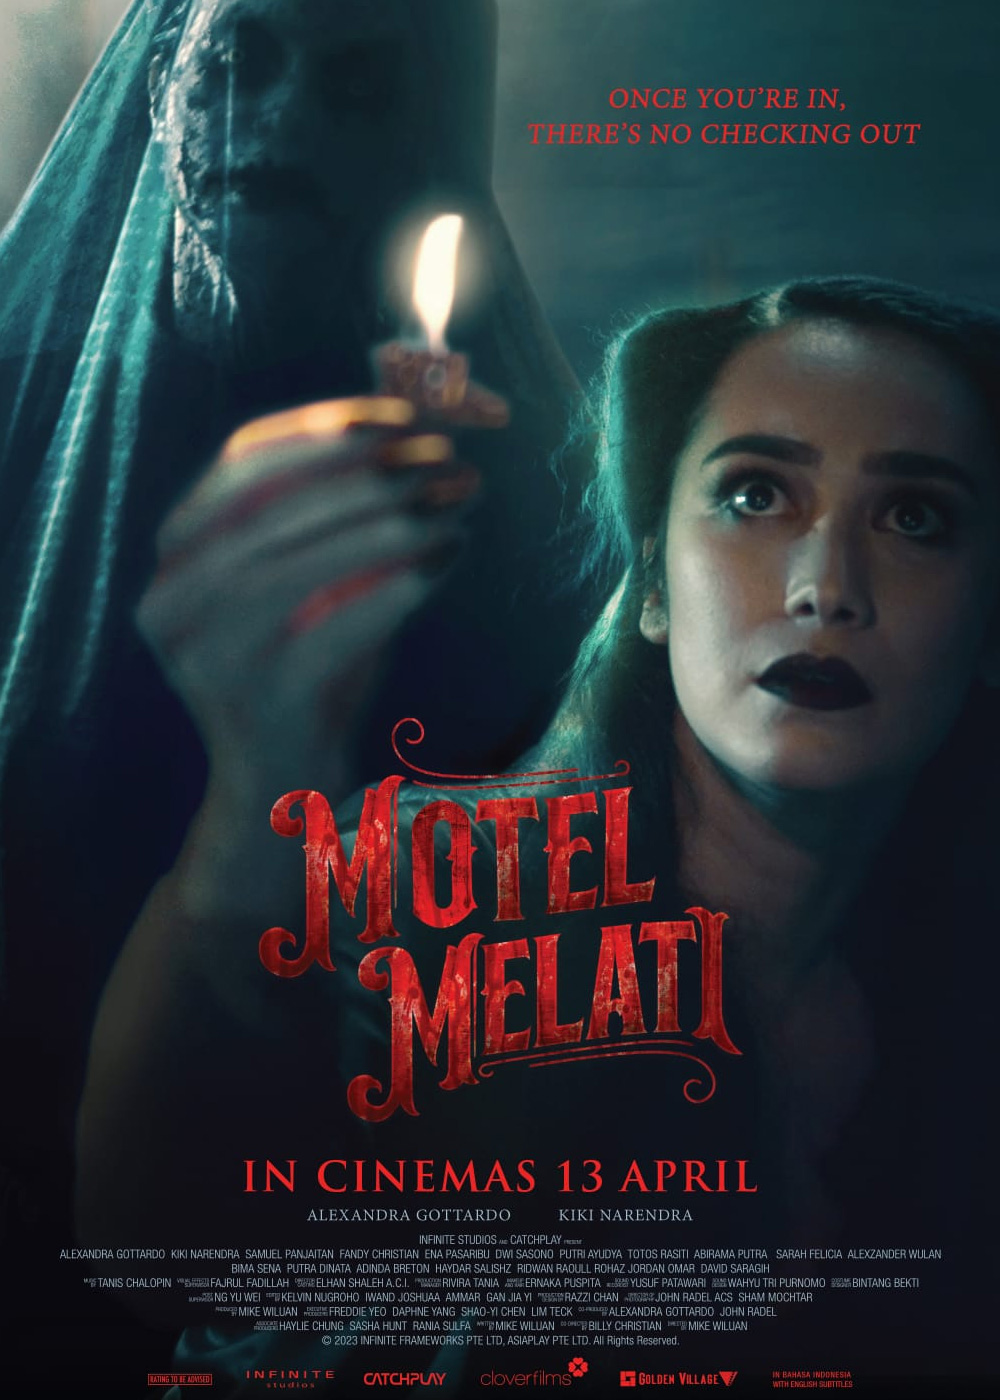 Motel Melati